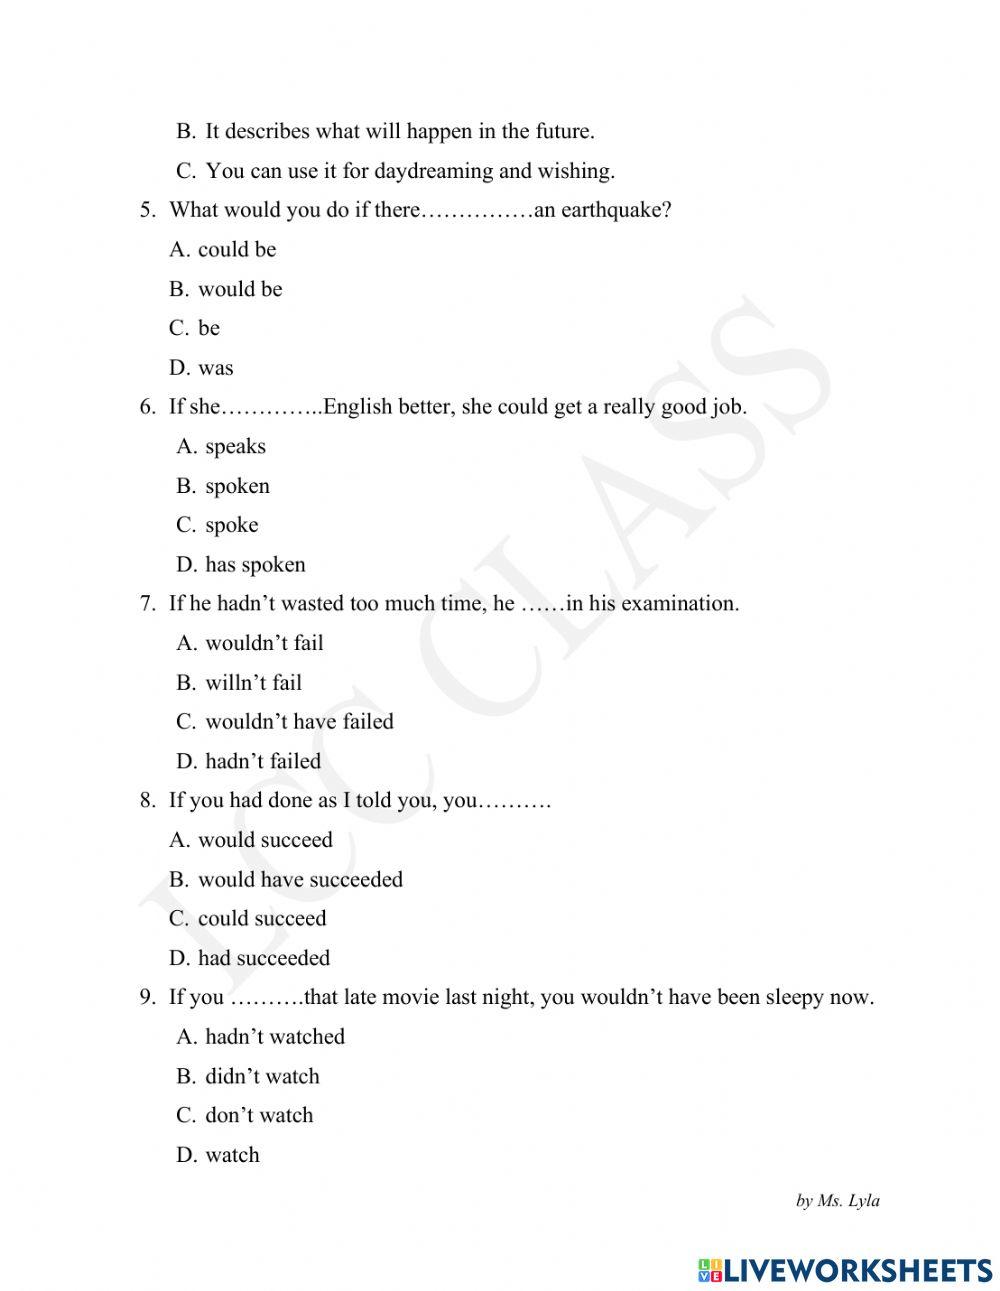 SG2 Grammar Test-Conditionals